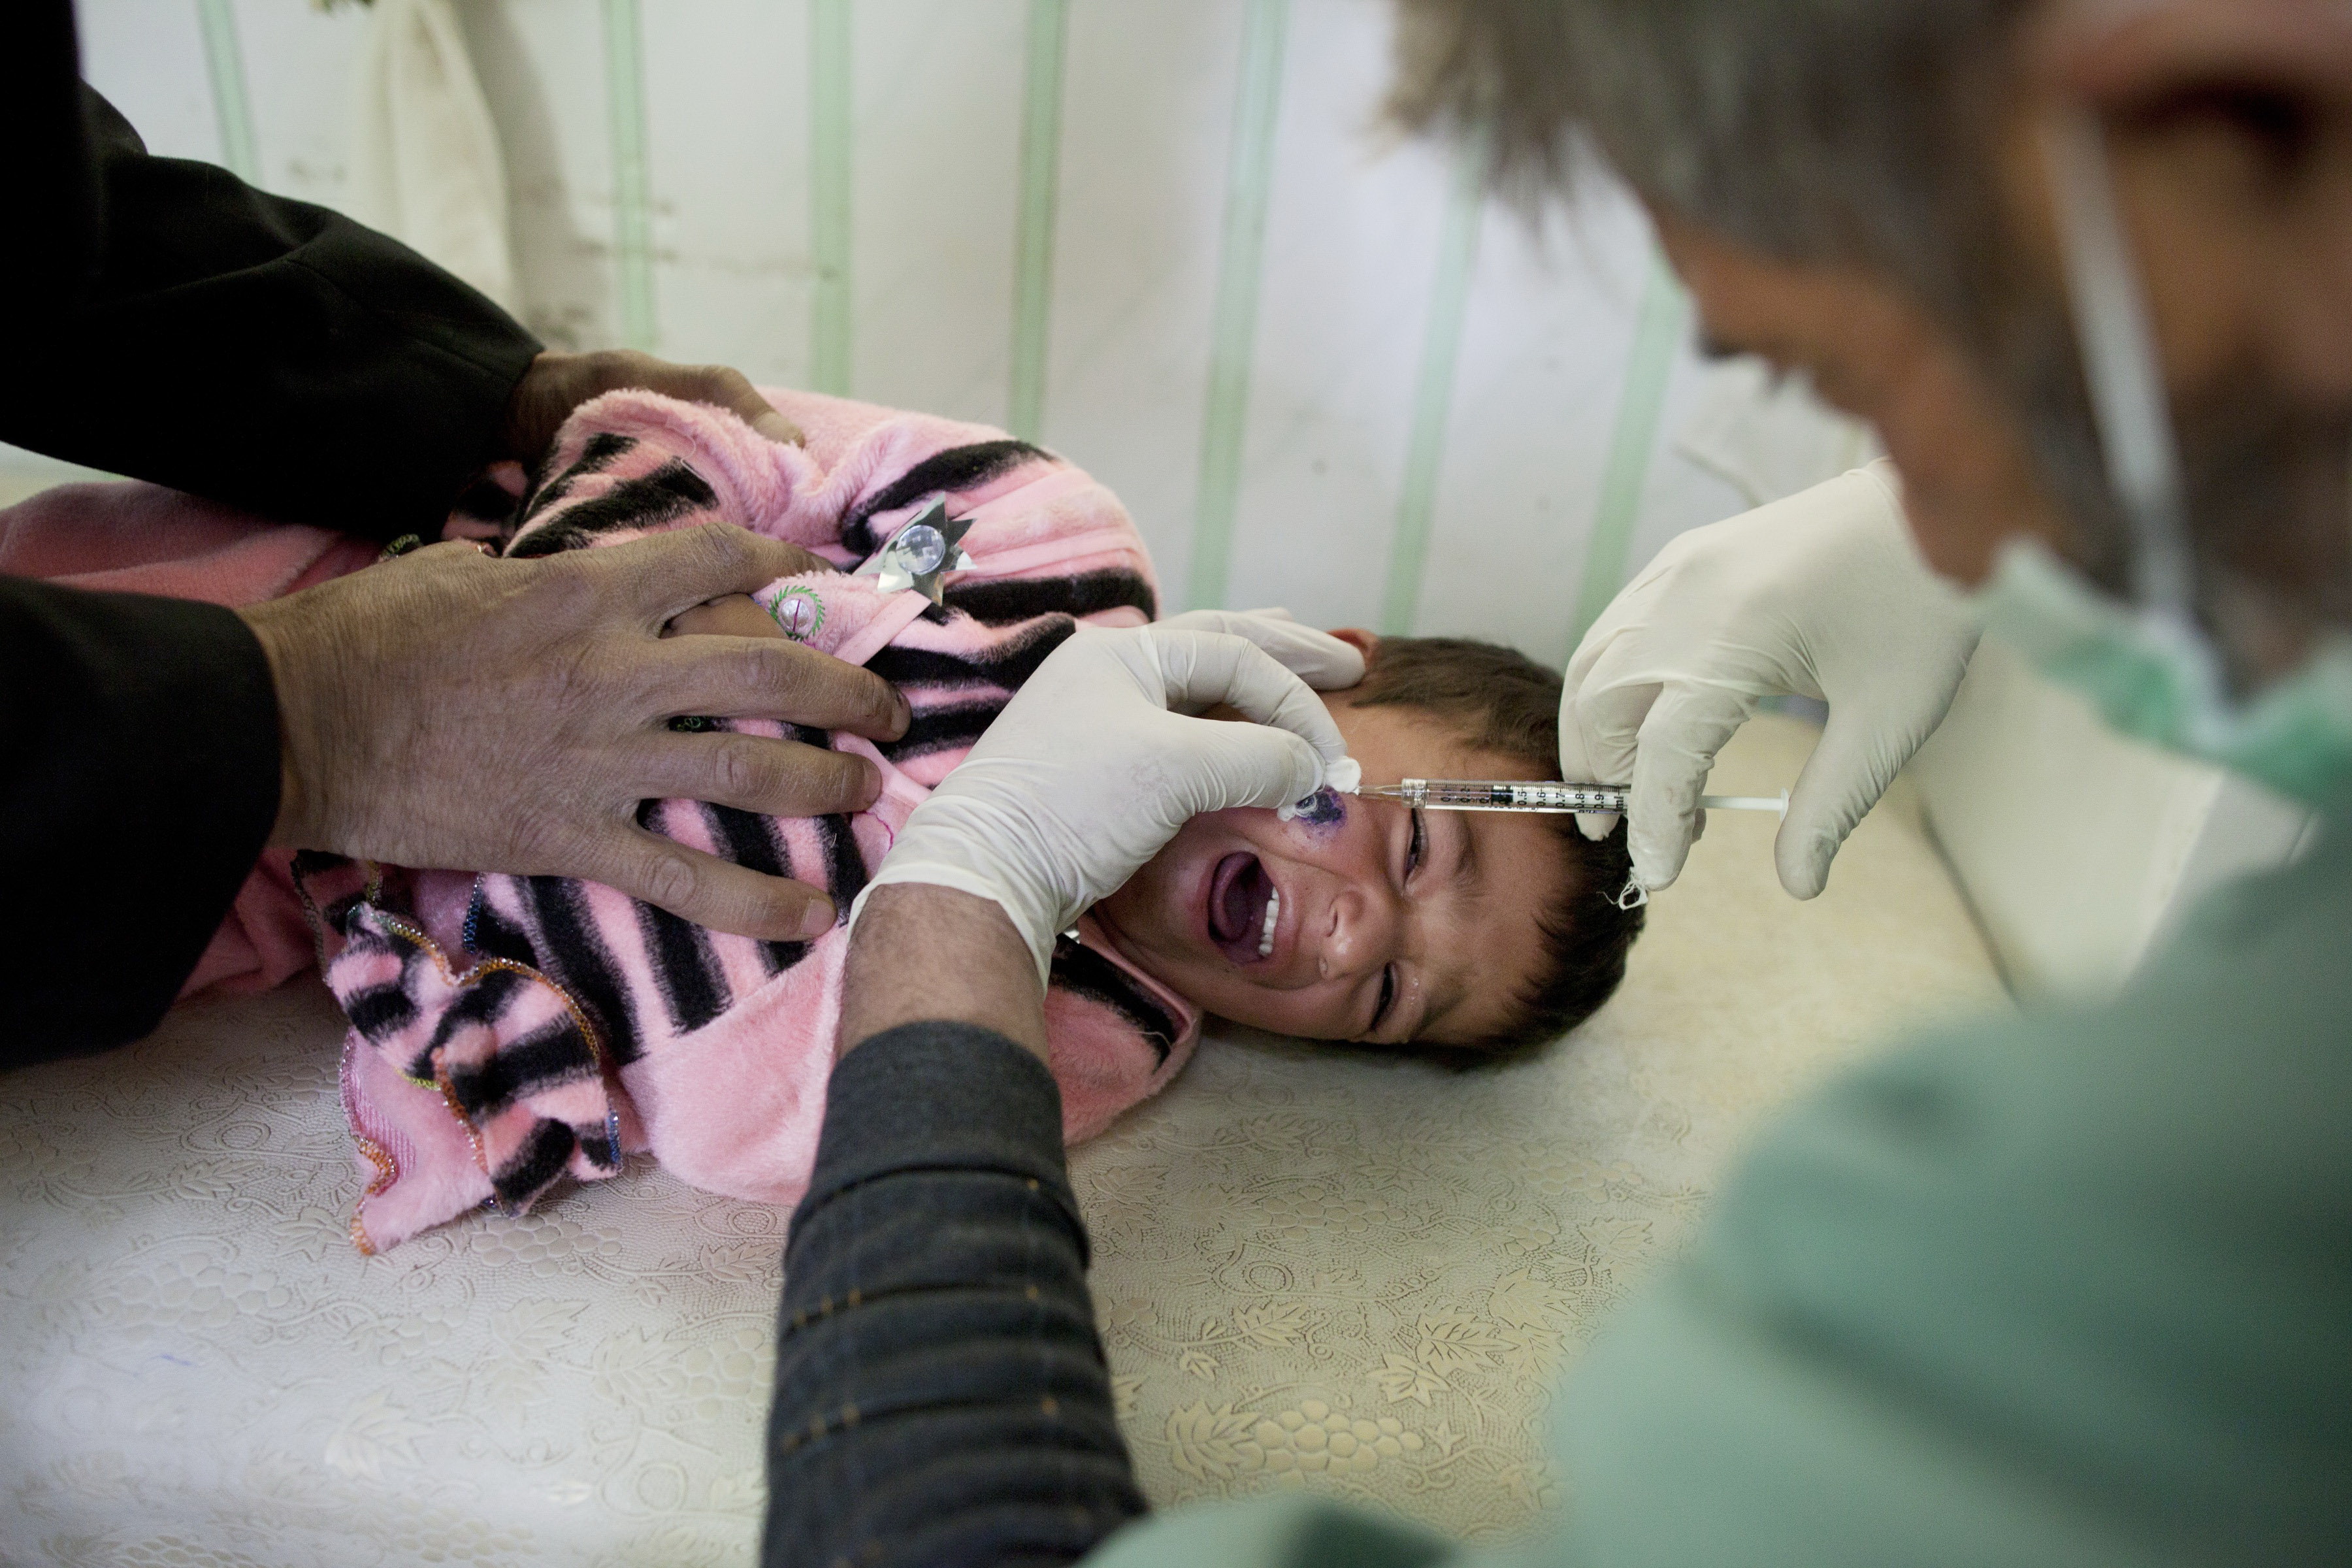 Húsevő baktérium támadta meg a szíriai túlélőket az Iszlám Állam miatt - fotók 18+